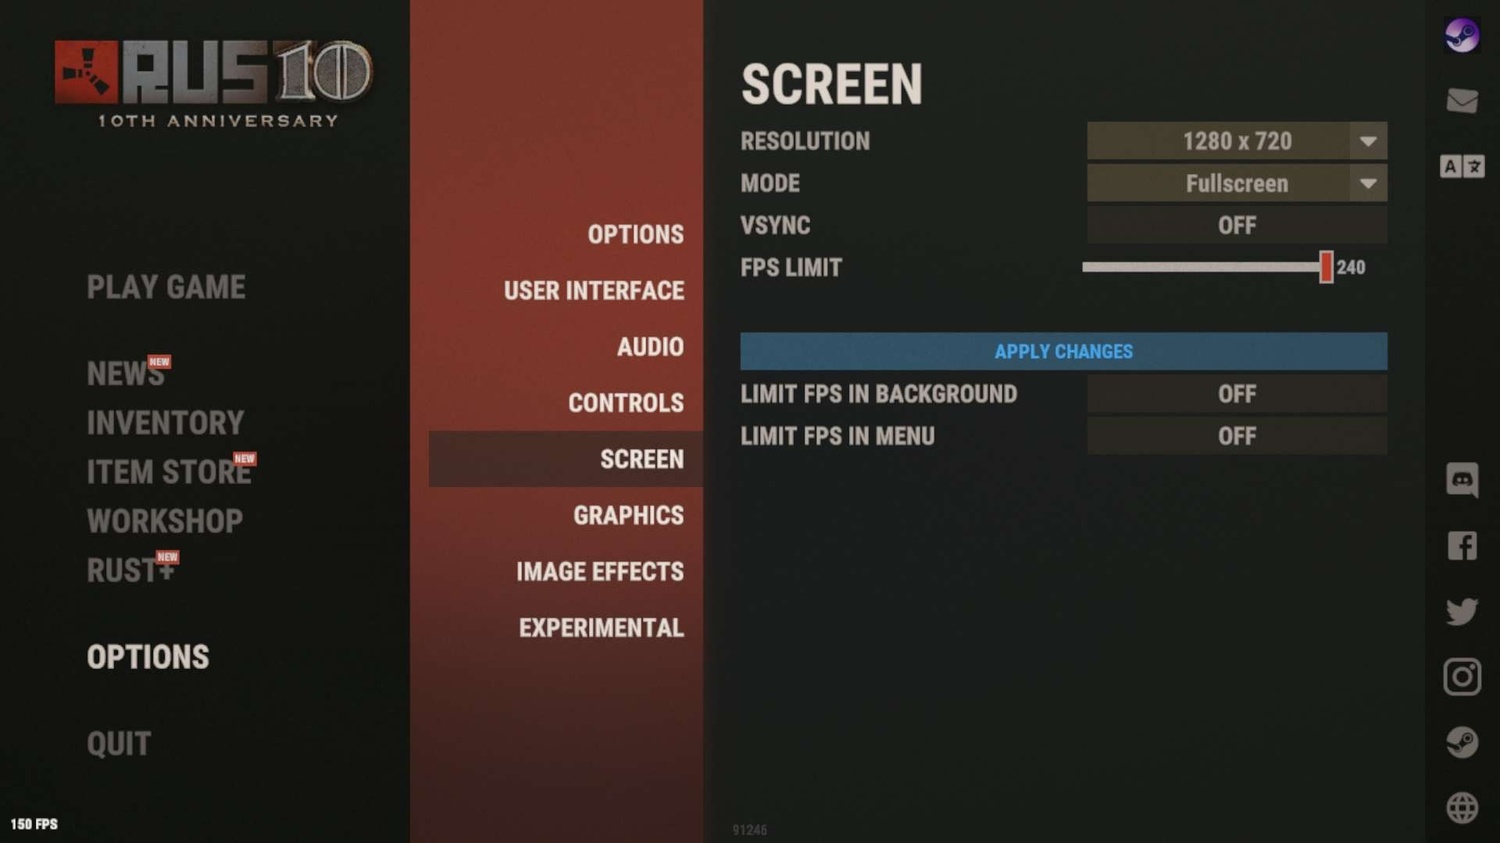 Снимок экрана, показывающий меню настроек в Rust, показывающее различные настройки вашего экрана.